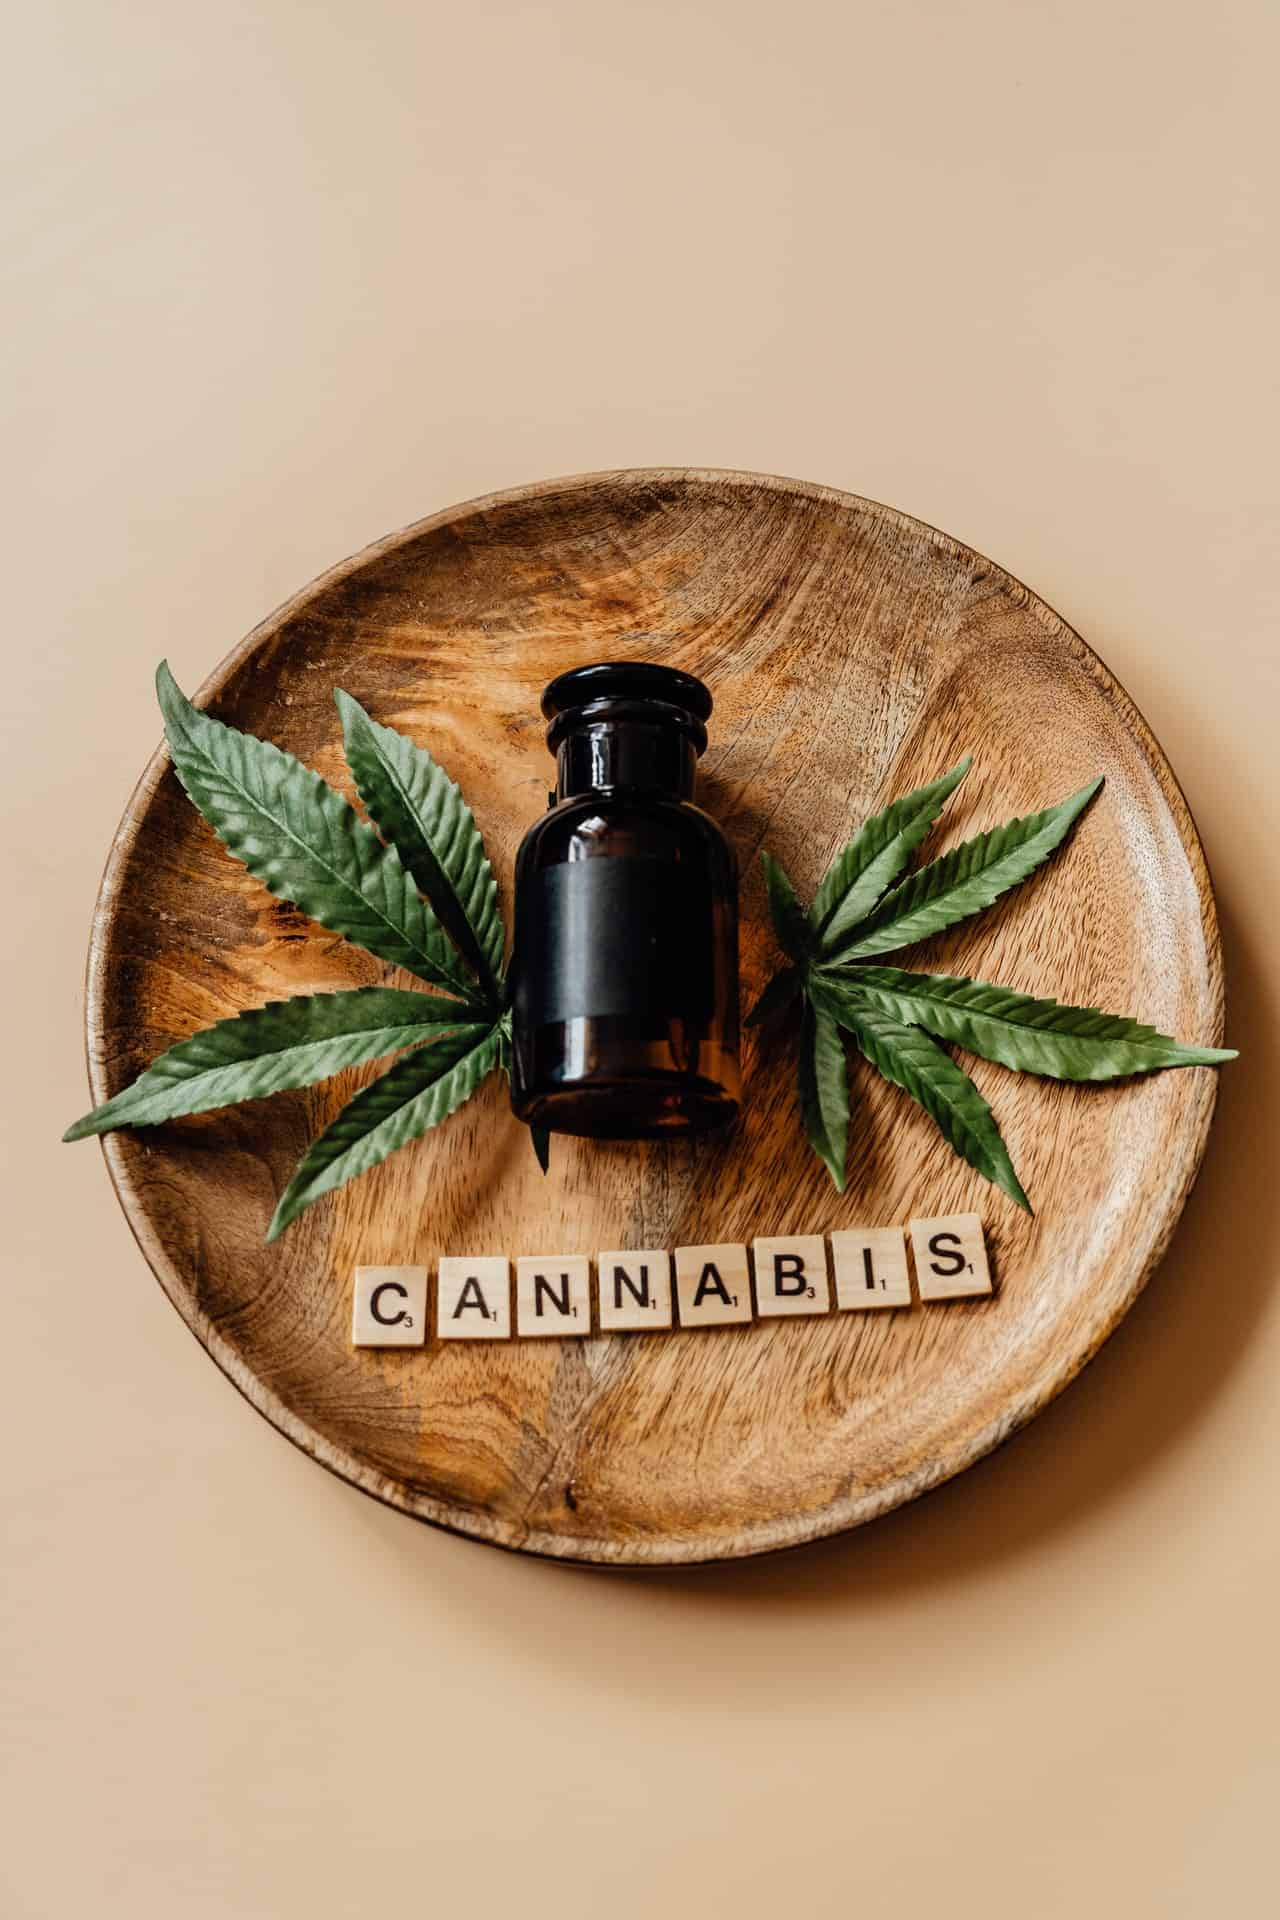 Cannabis 101: What Are Cannabinoids?